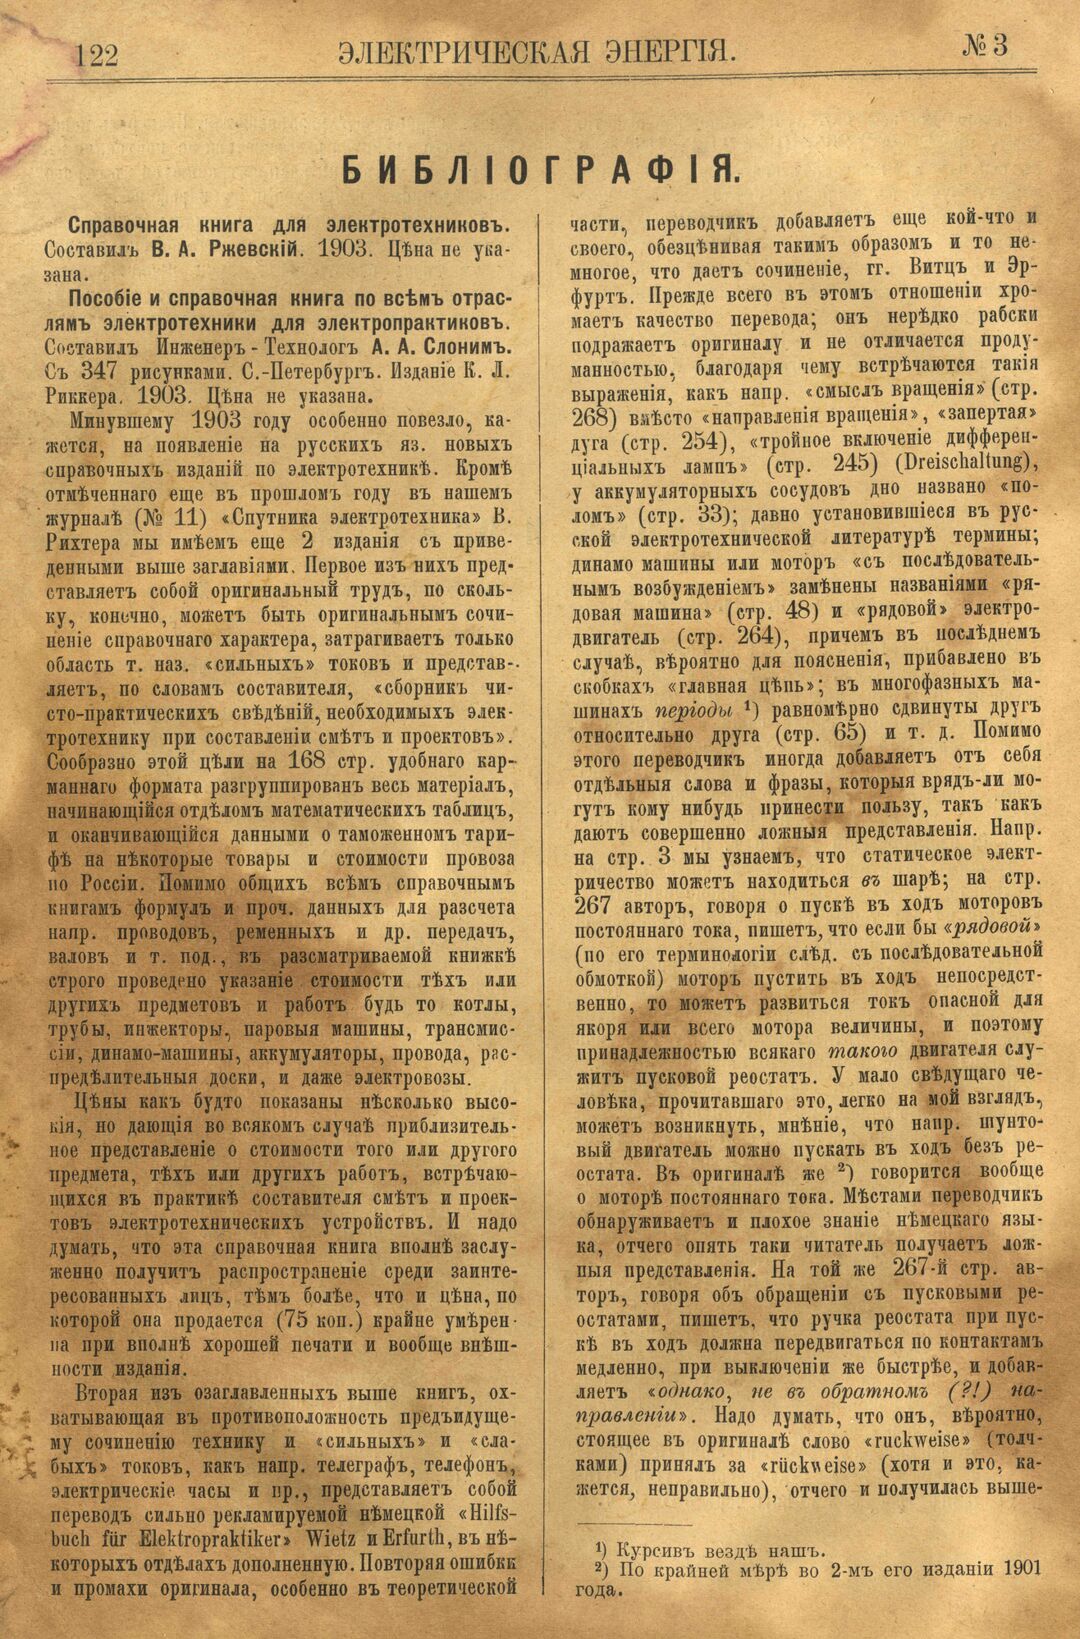 Рис. 1. Журнал Электрическая Энергiя, 3 номер, март, 1904 года, страница 122